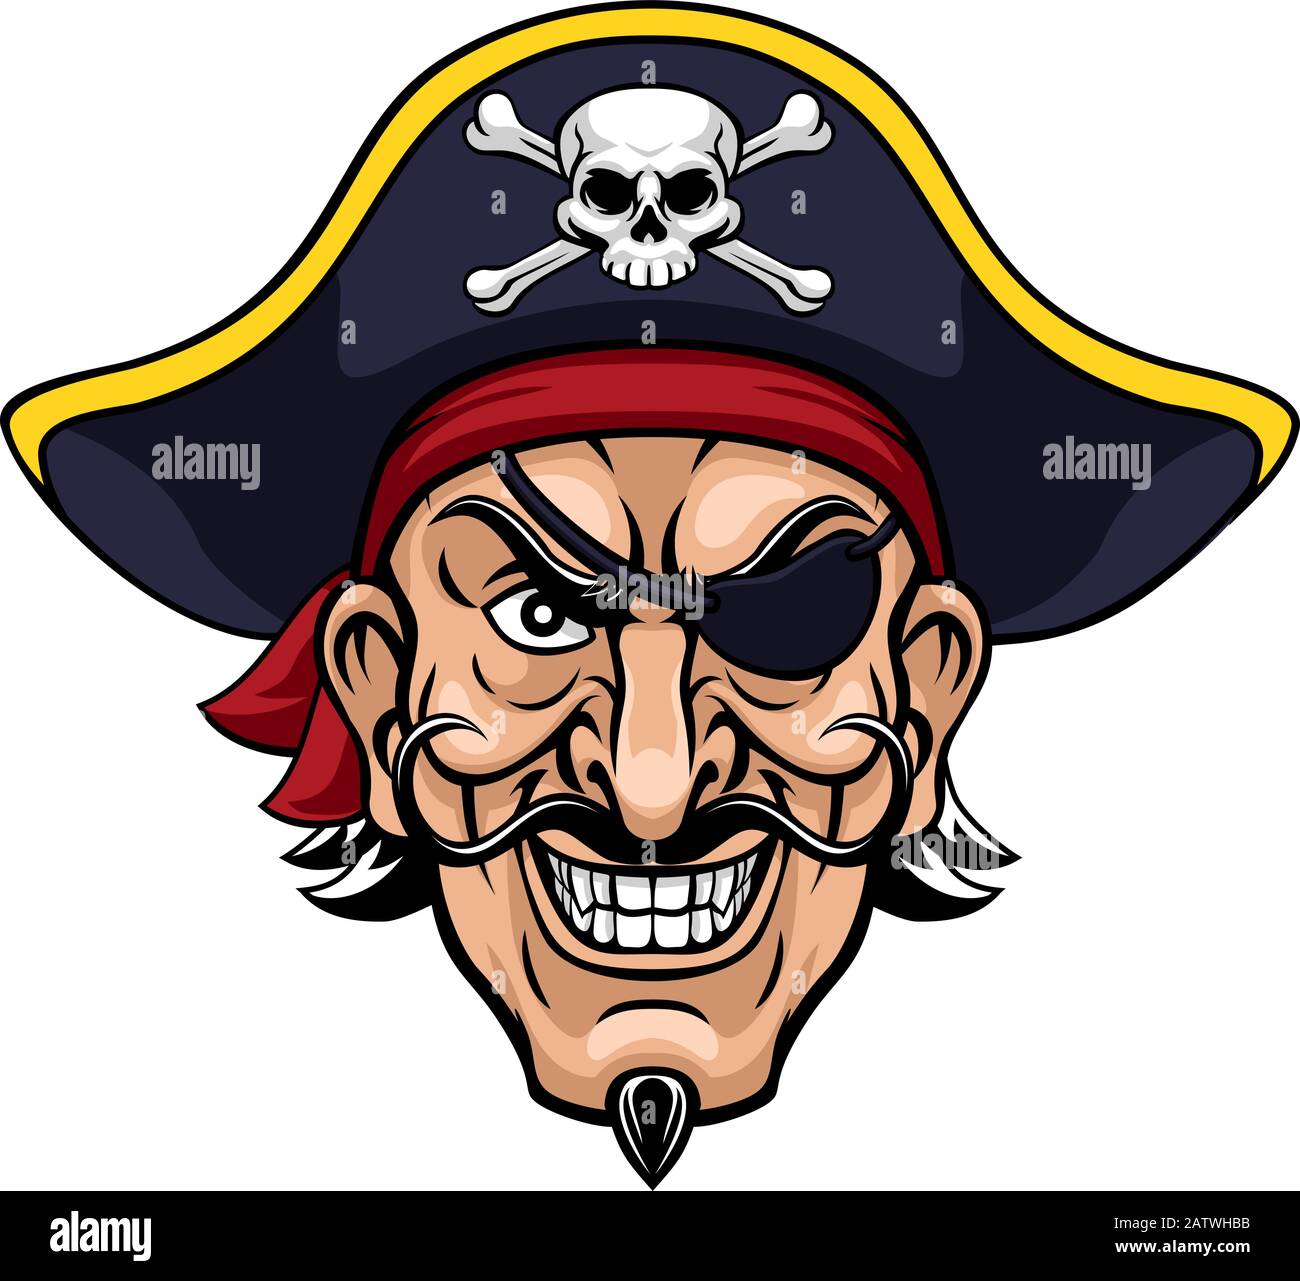 Piraten Kapitän Zeichentrickfigur Maskottchen Stock Vektor